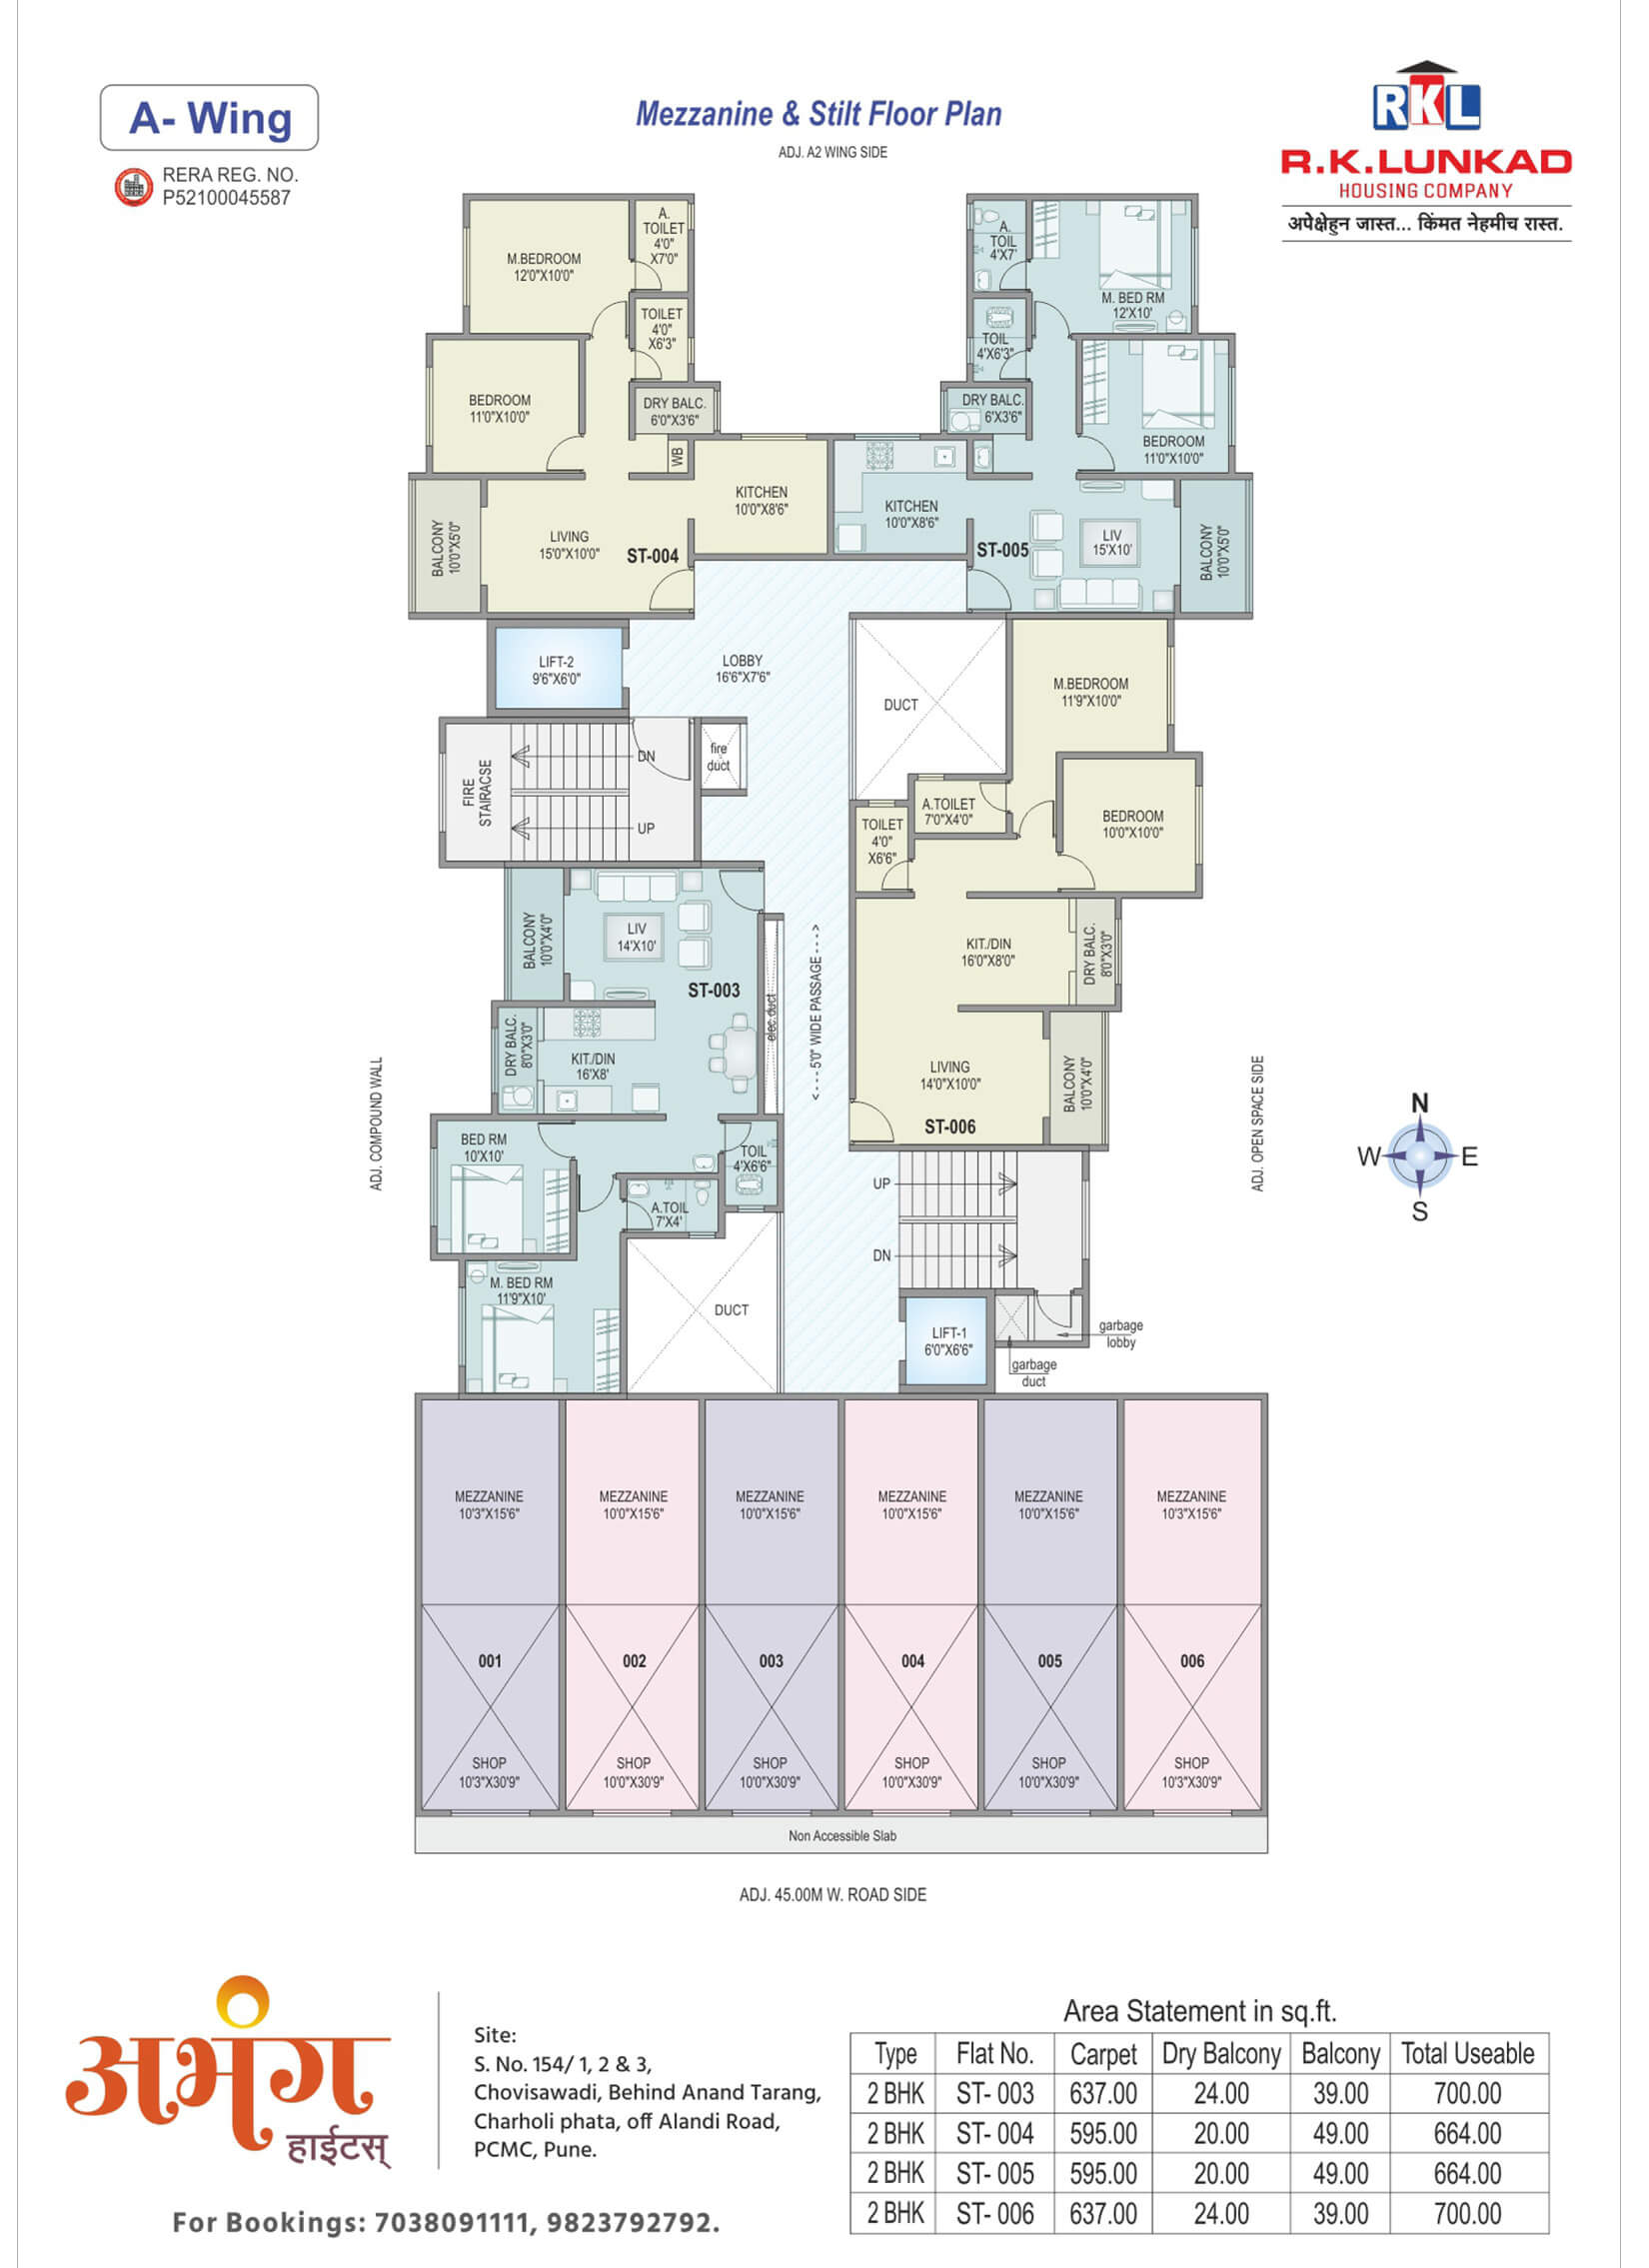 Abhang Heights - Mezzanine and Stilt Floor Plan